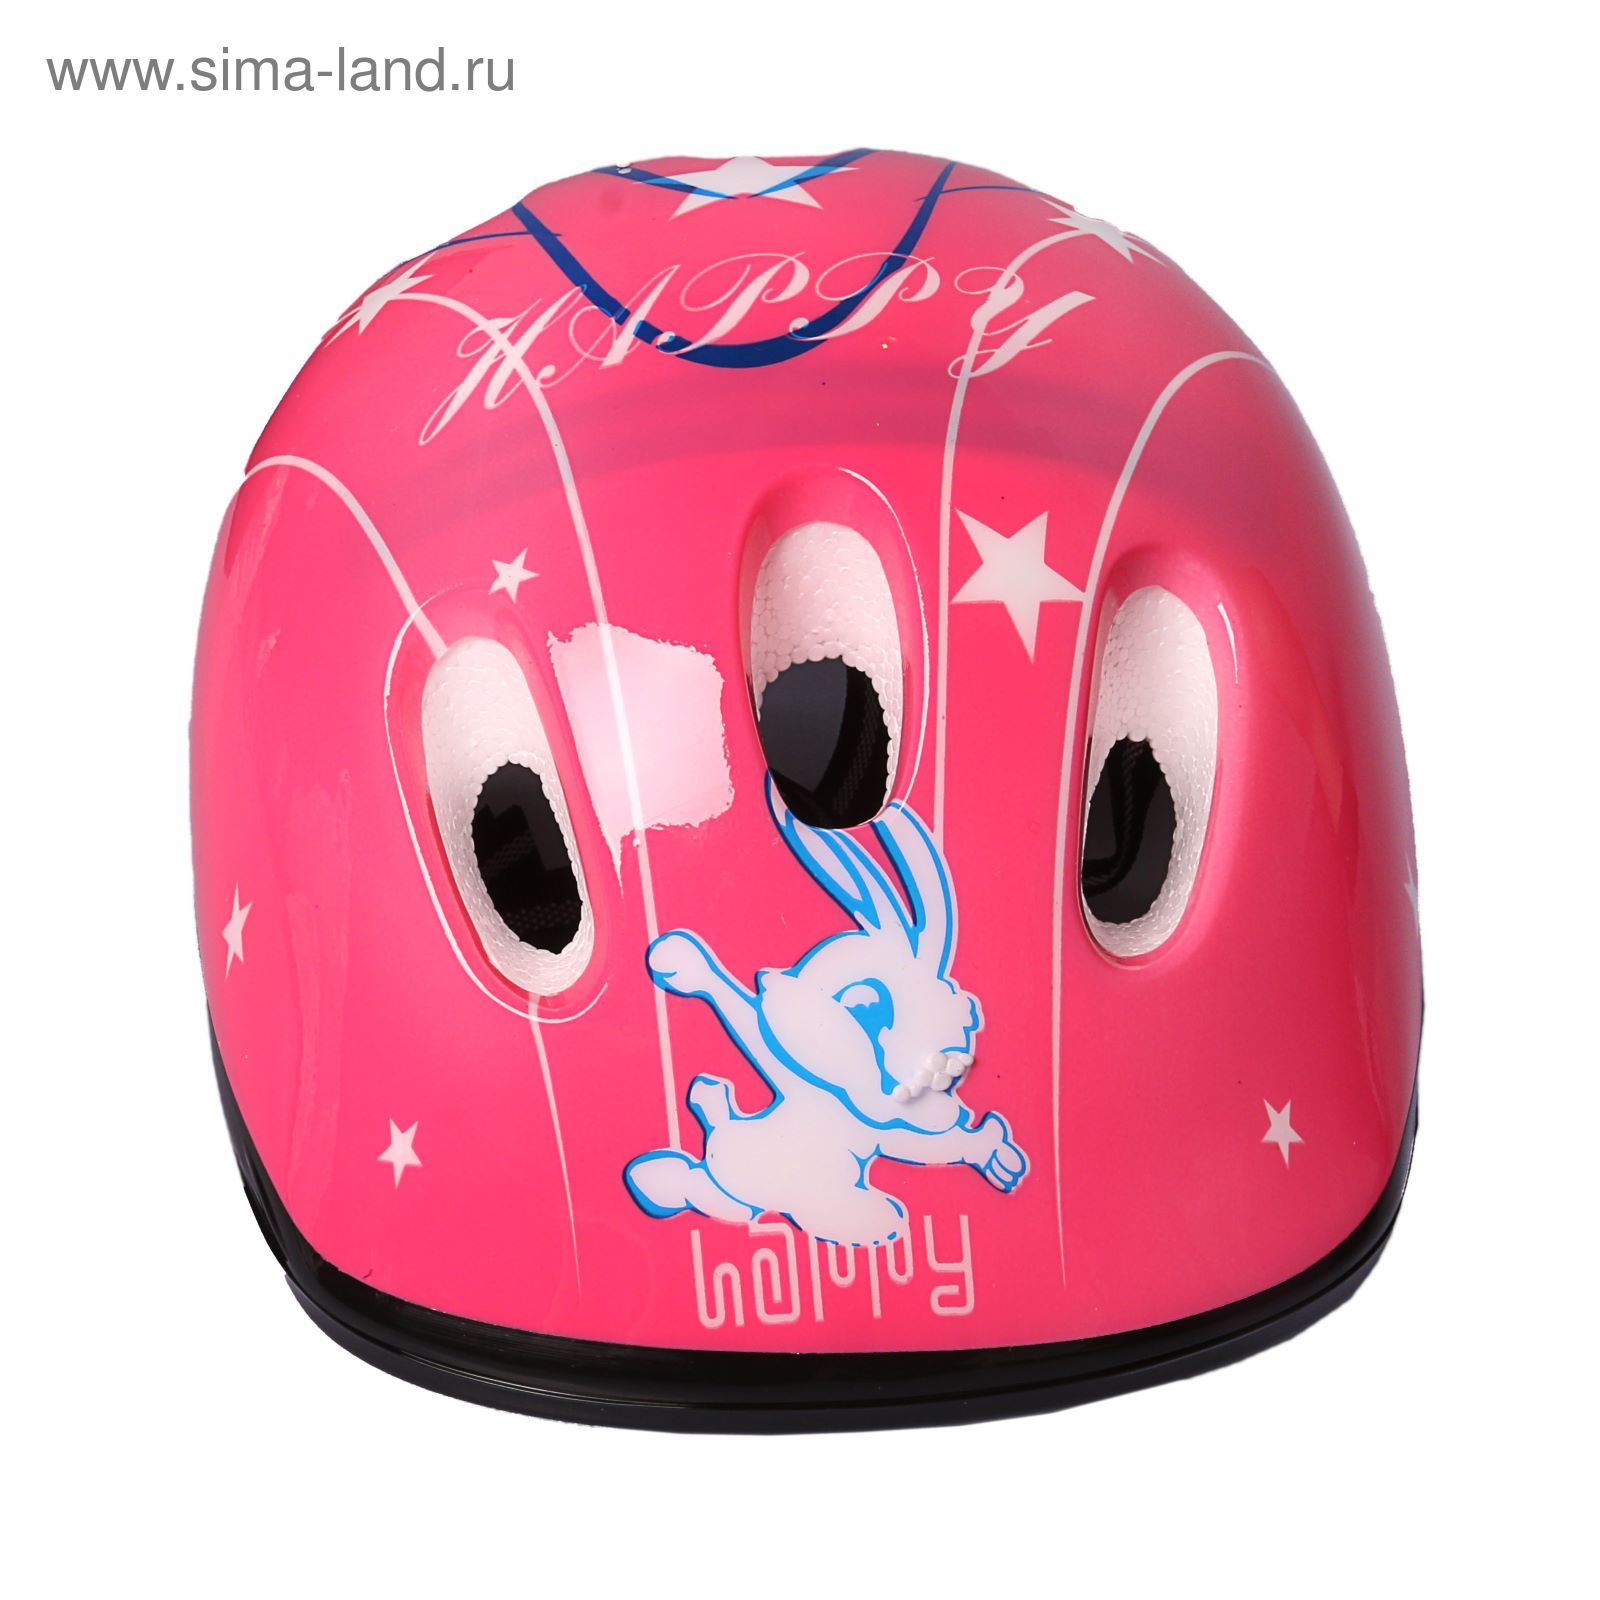 Шлем защитный OT-XQSH-6 детский р S (52-54 см), цвет розовый